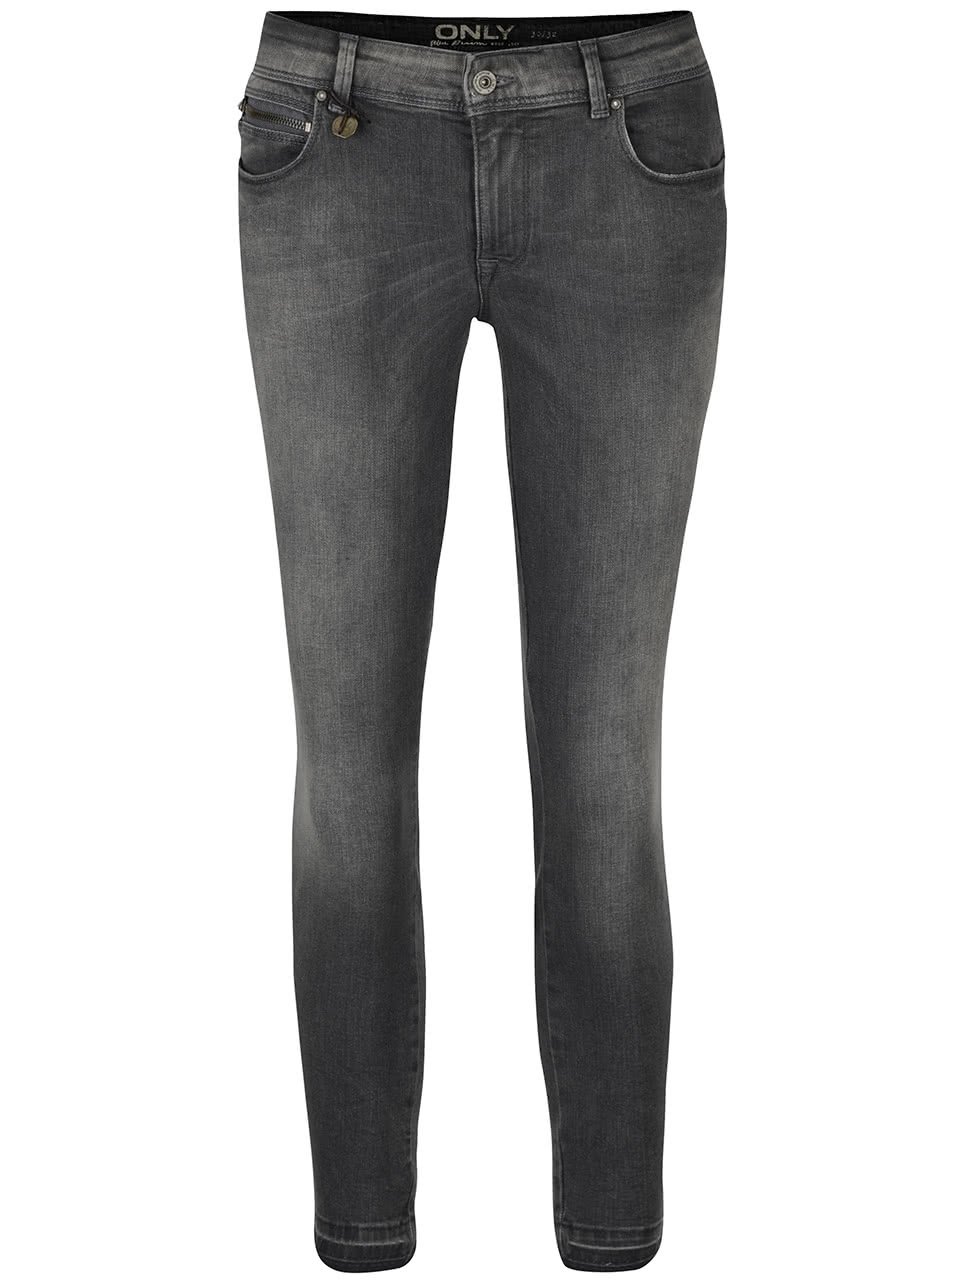 Tmavě šedé vyšisované skinny džíny ONLY Carmen